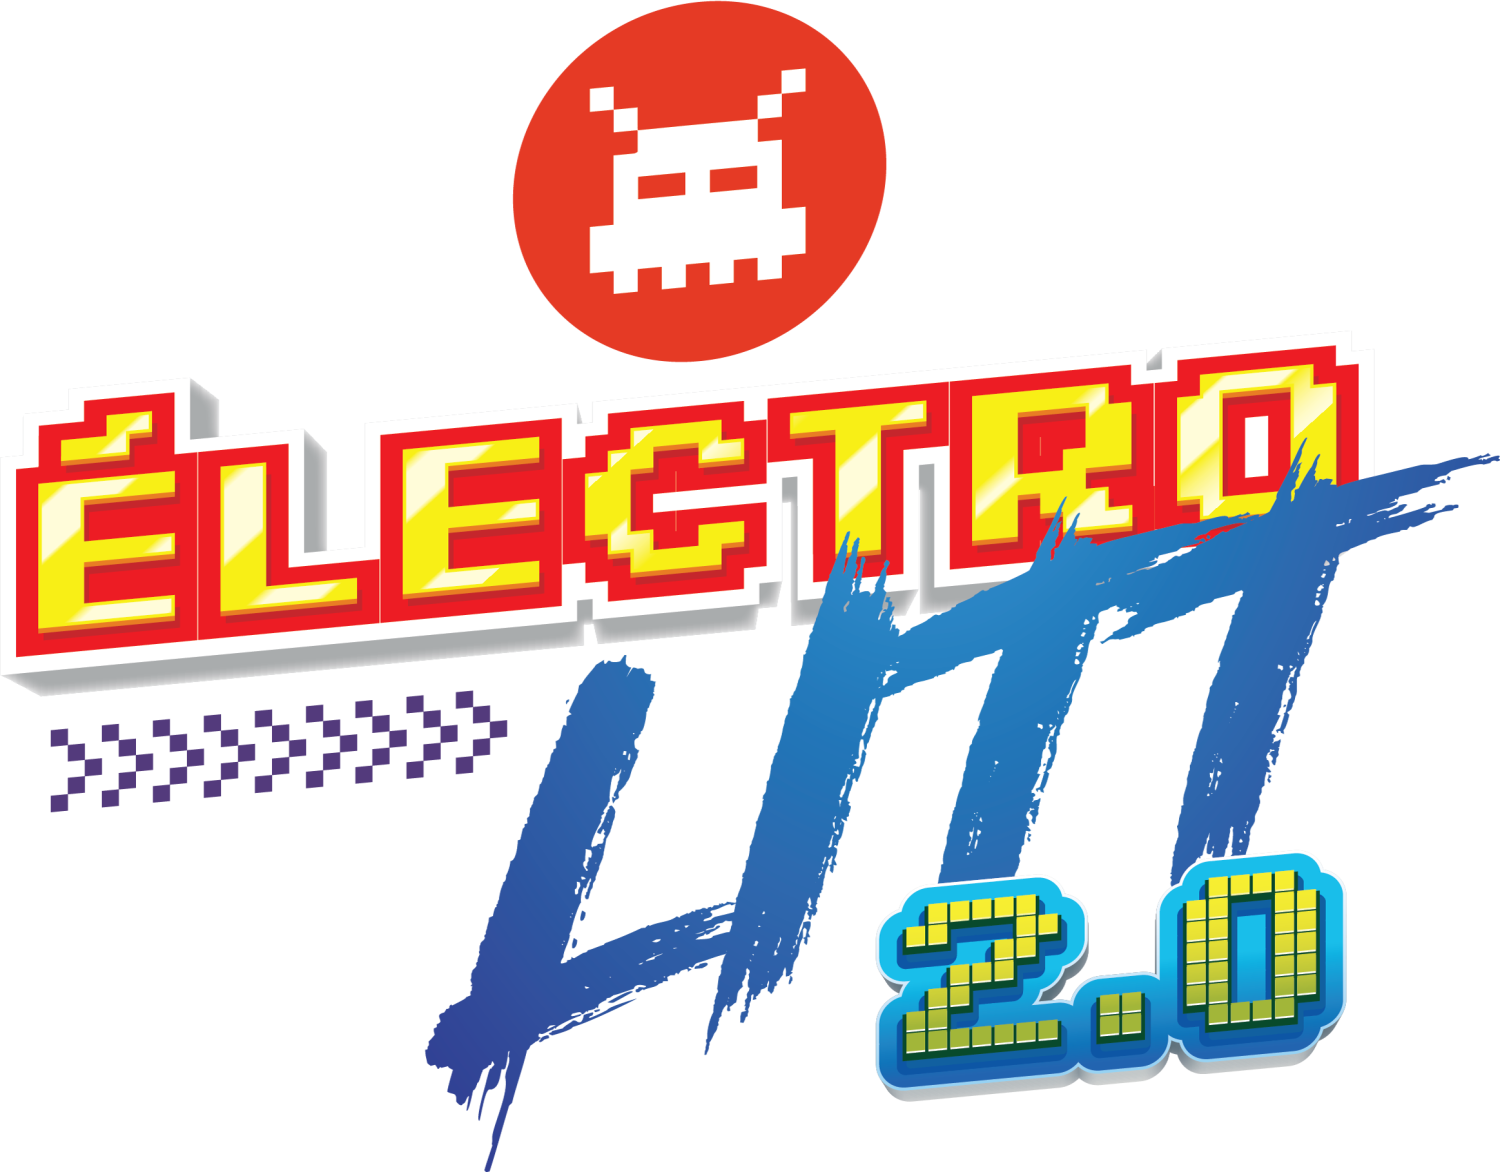 ÉlectroLitt 2.0